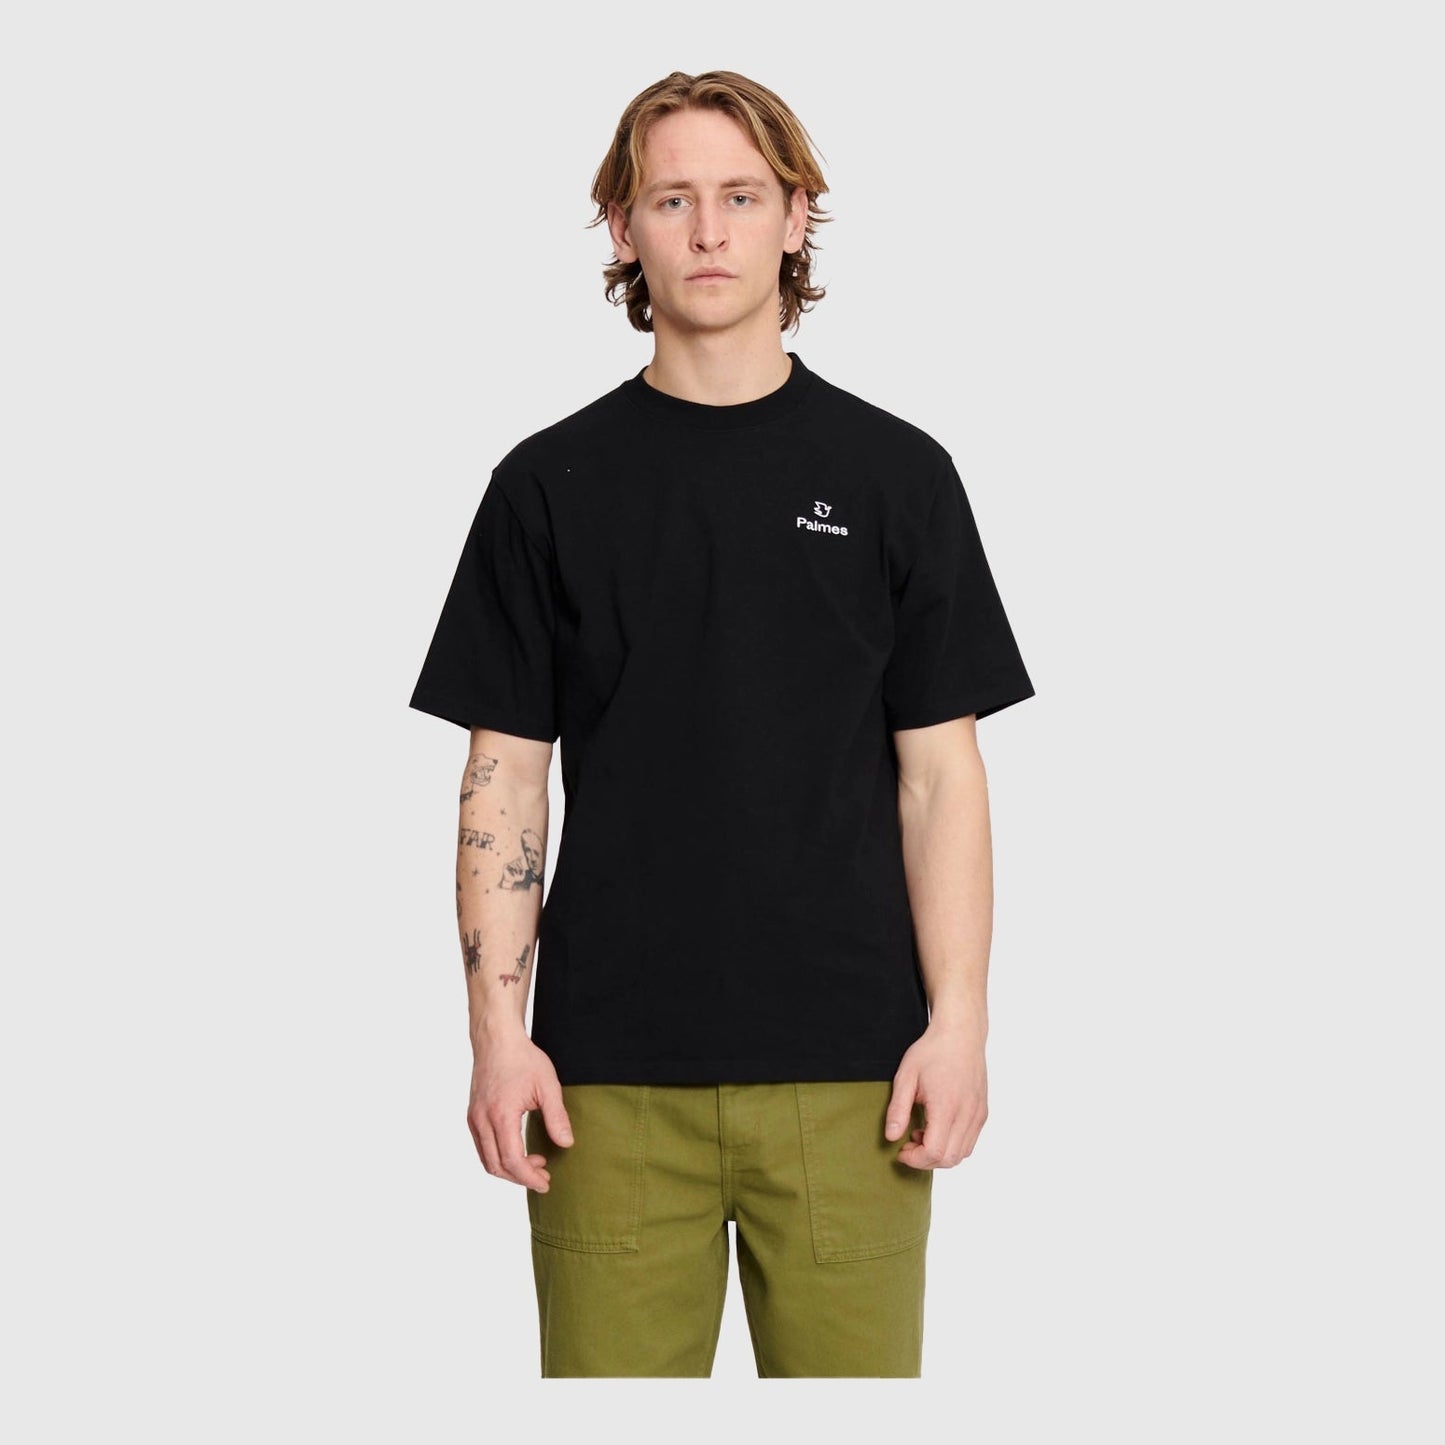 Palmes Allan T-Shirt - Black T-shirt Palmes 